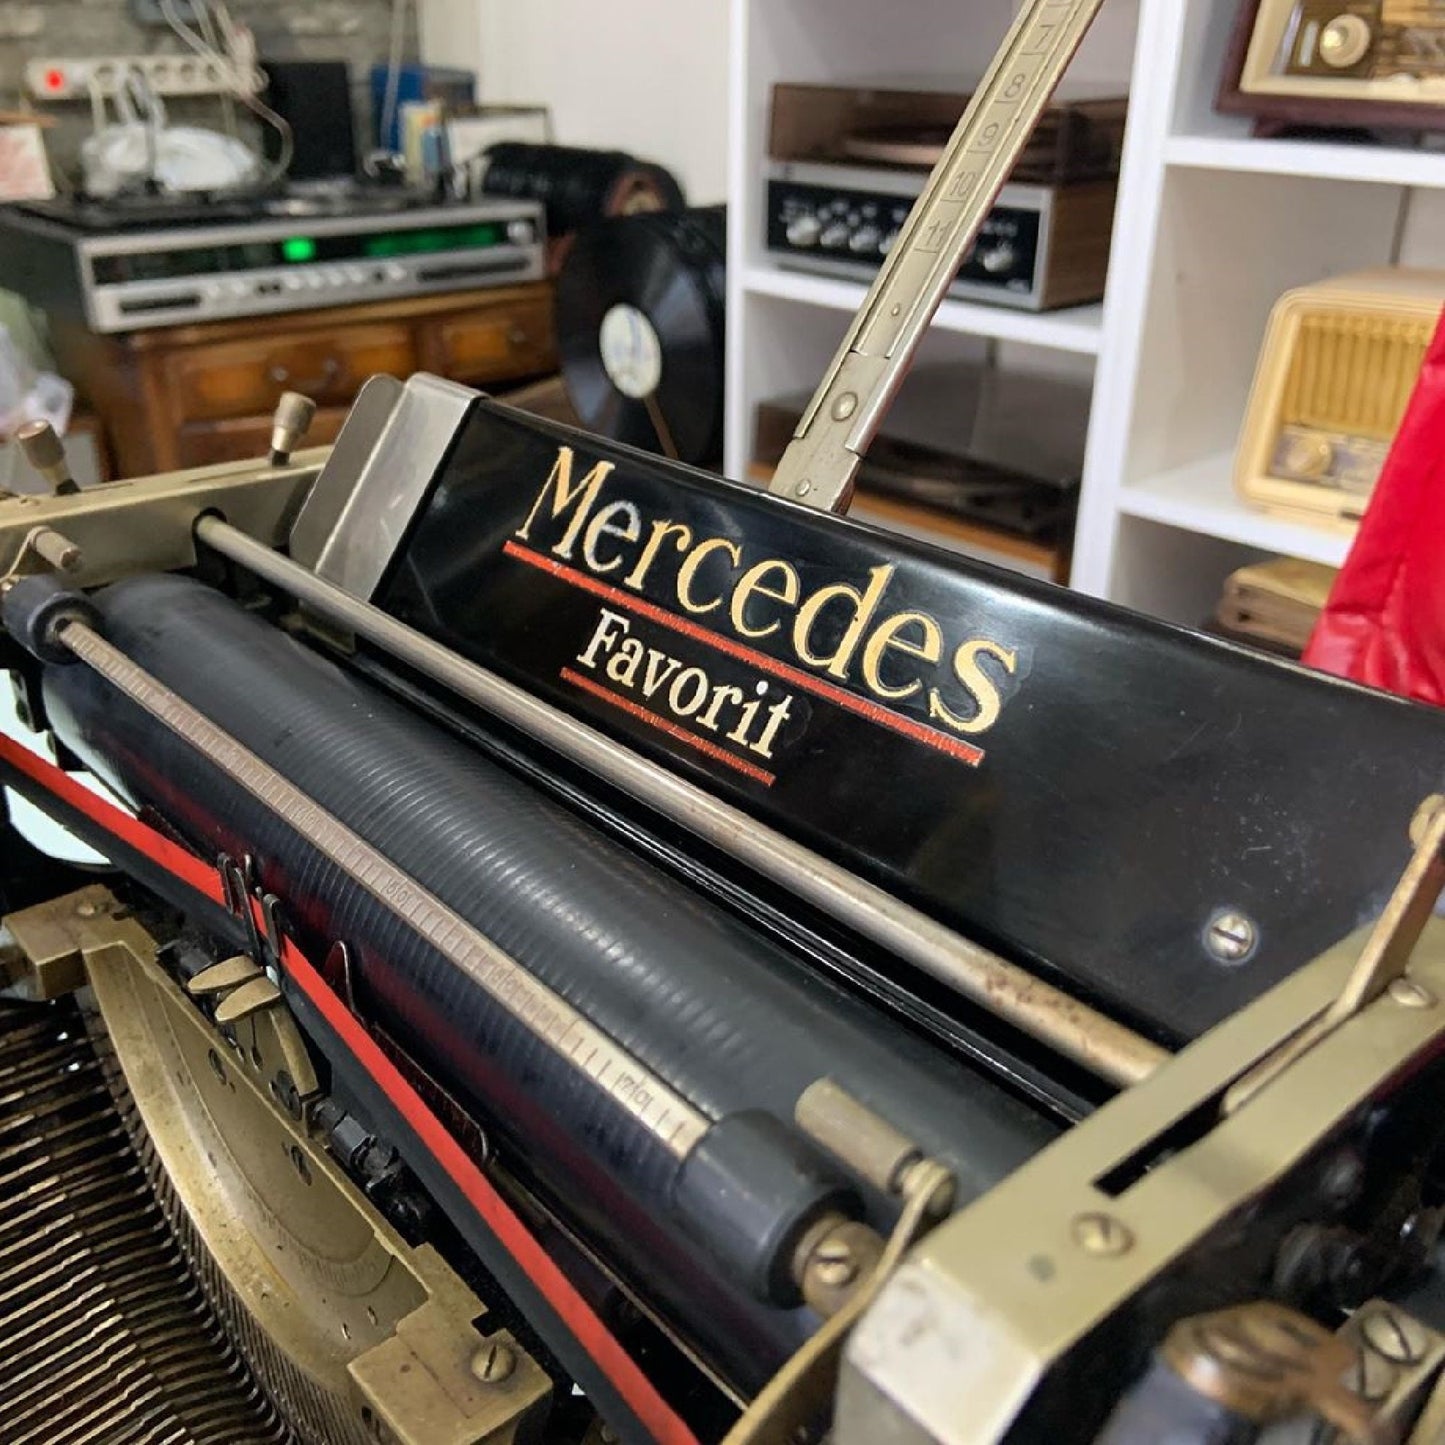 Mercedes Office  Rare and Exclusive Error-free Typewriter| Working Typewriter | Old Typewriter | Antique Typewriter | Vintage Typewriter